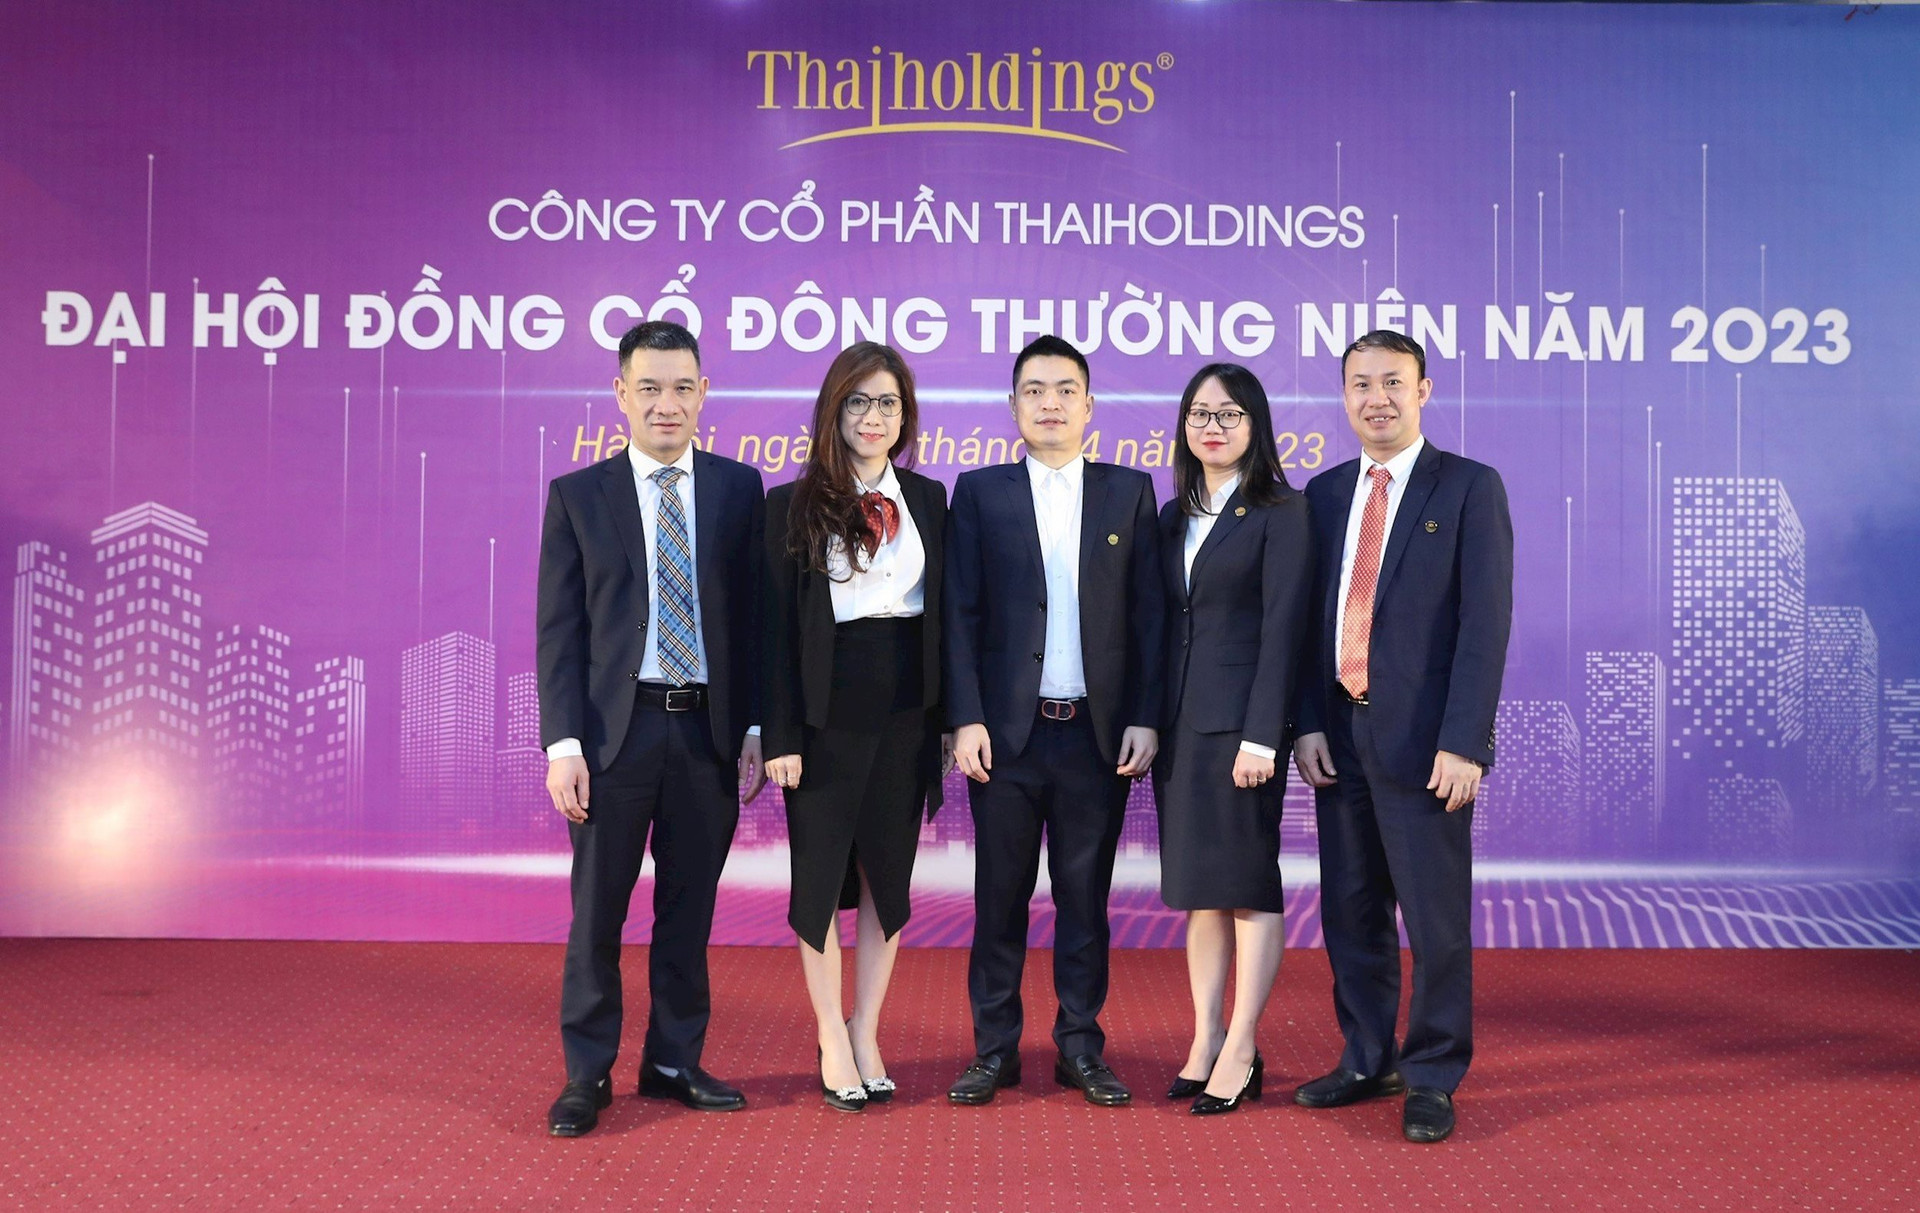 Thaiholdings thay 3 thành viên Hội đồng quản trị, kế hoạch lãi 241 tỷ đồng năm 2023 - Ảnh 2.